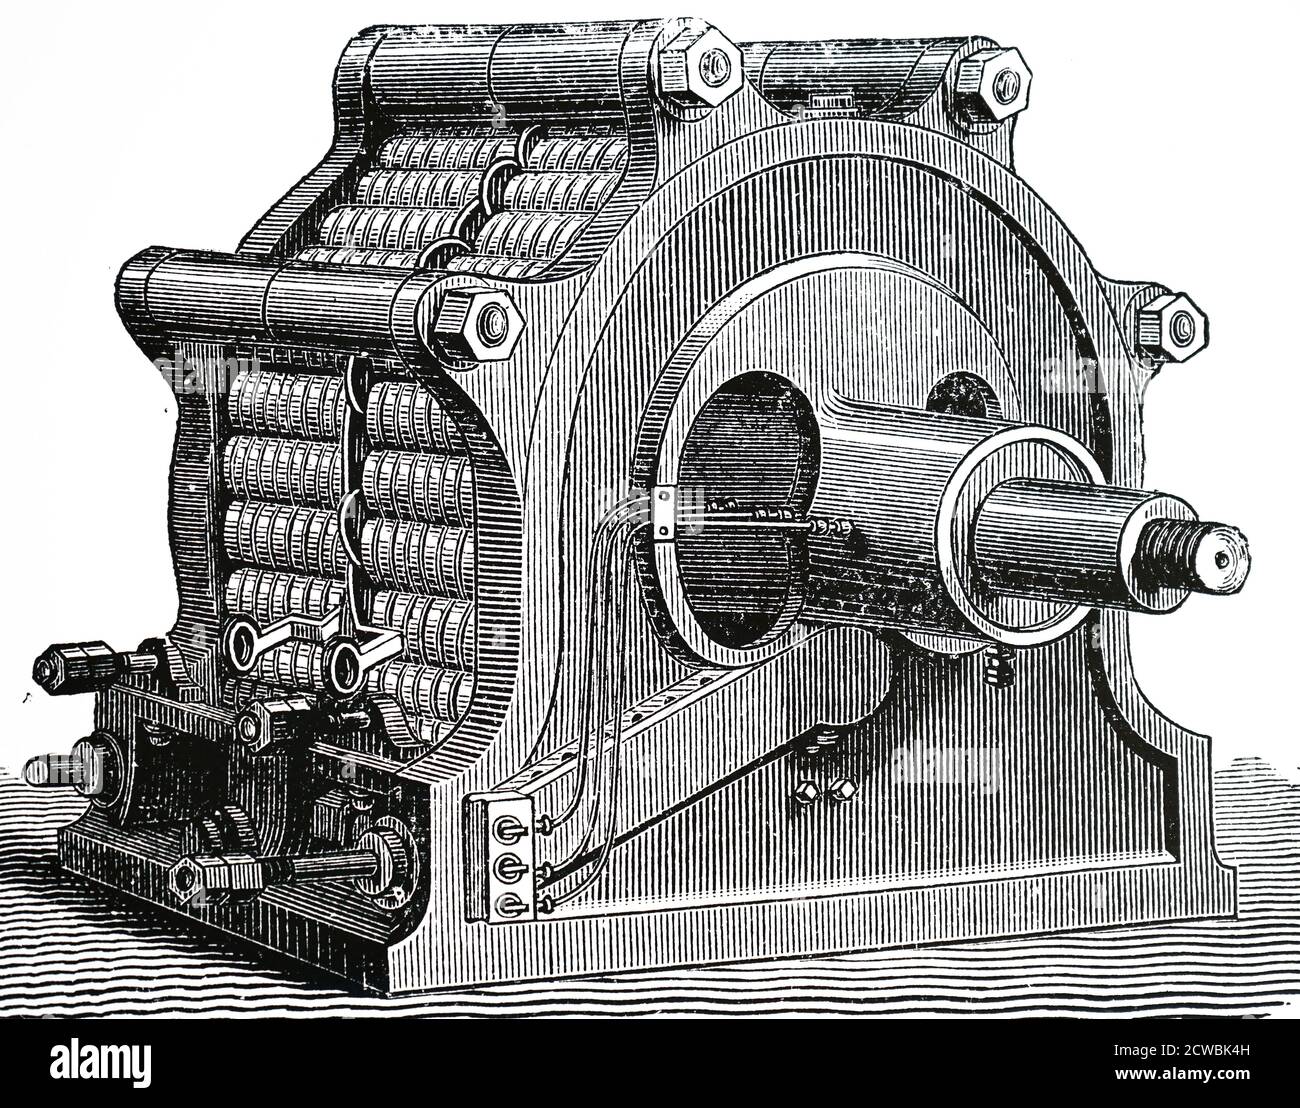 Grabado que representa un alternador monofásico Ferranti-Thomson (1884). Desarrollado por William Thomson (Lord Kelvin), S. Z. de Ferranti y Alfred Thomson. Foto de stock